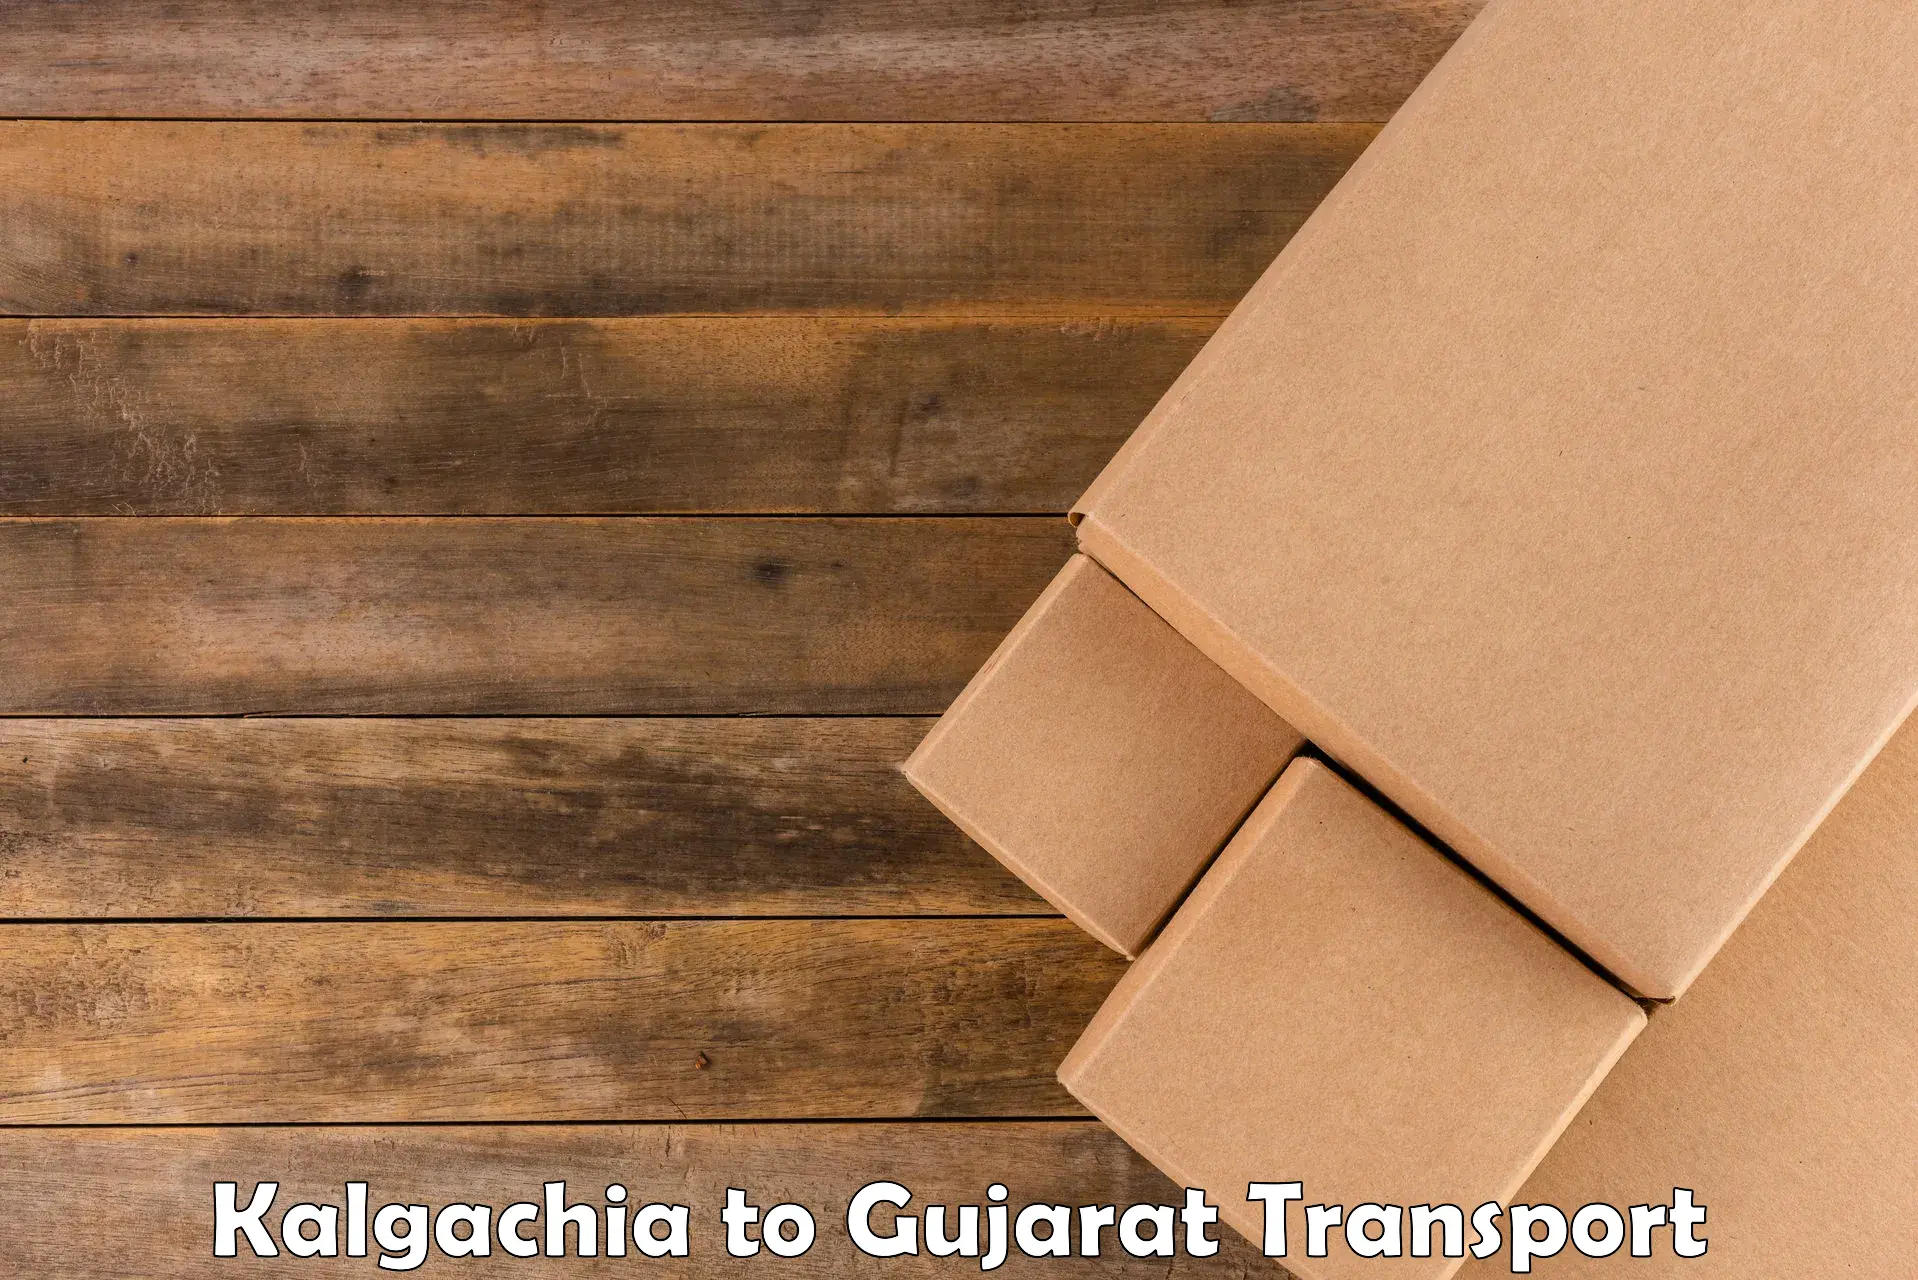 Air freight transport services Kalgachia to Surat